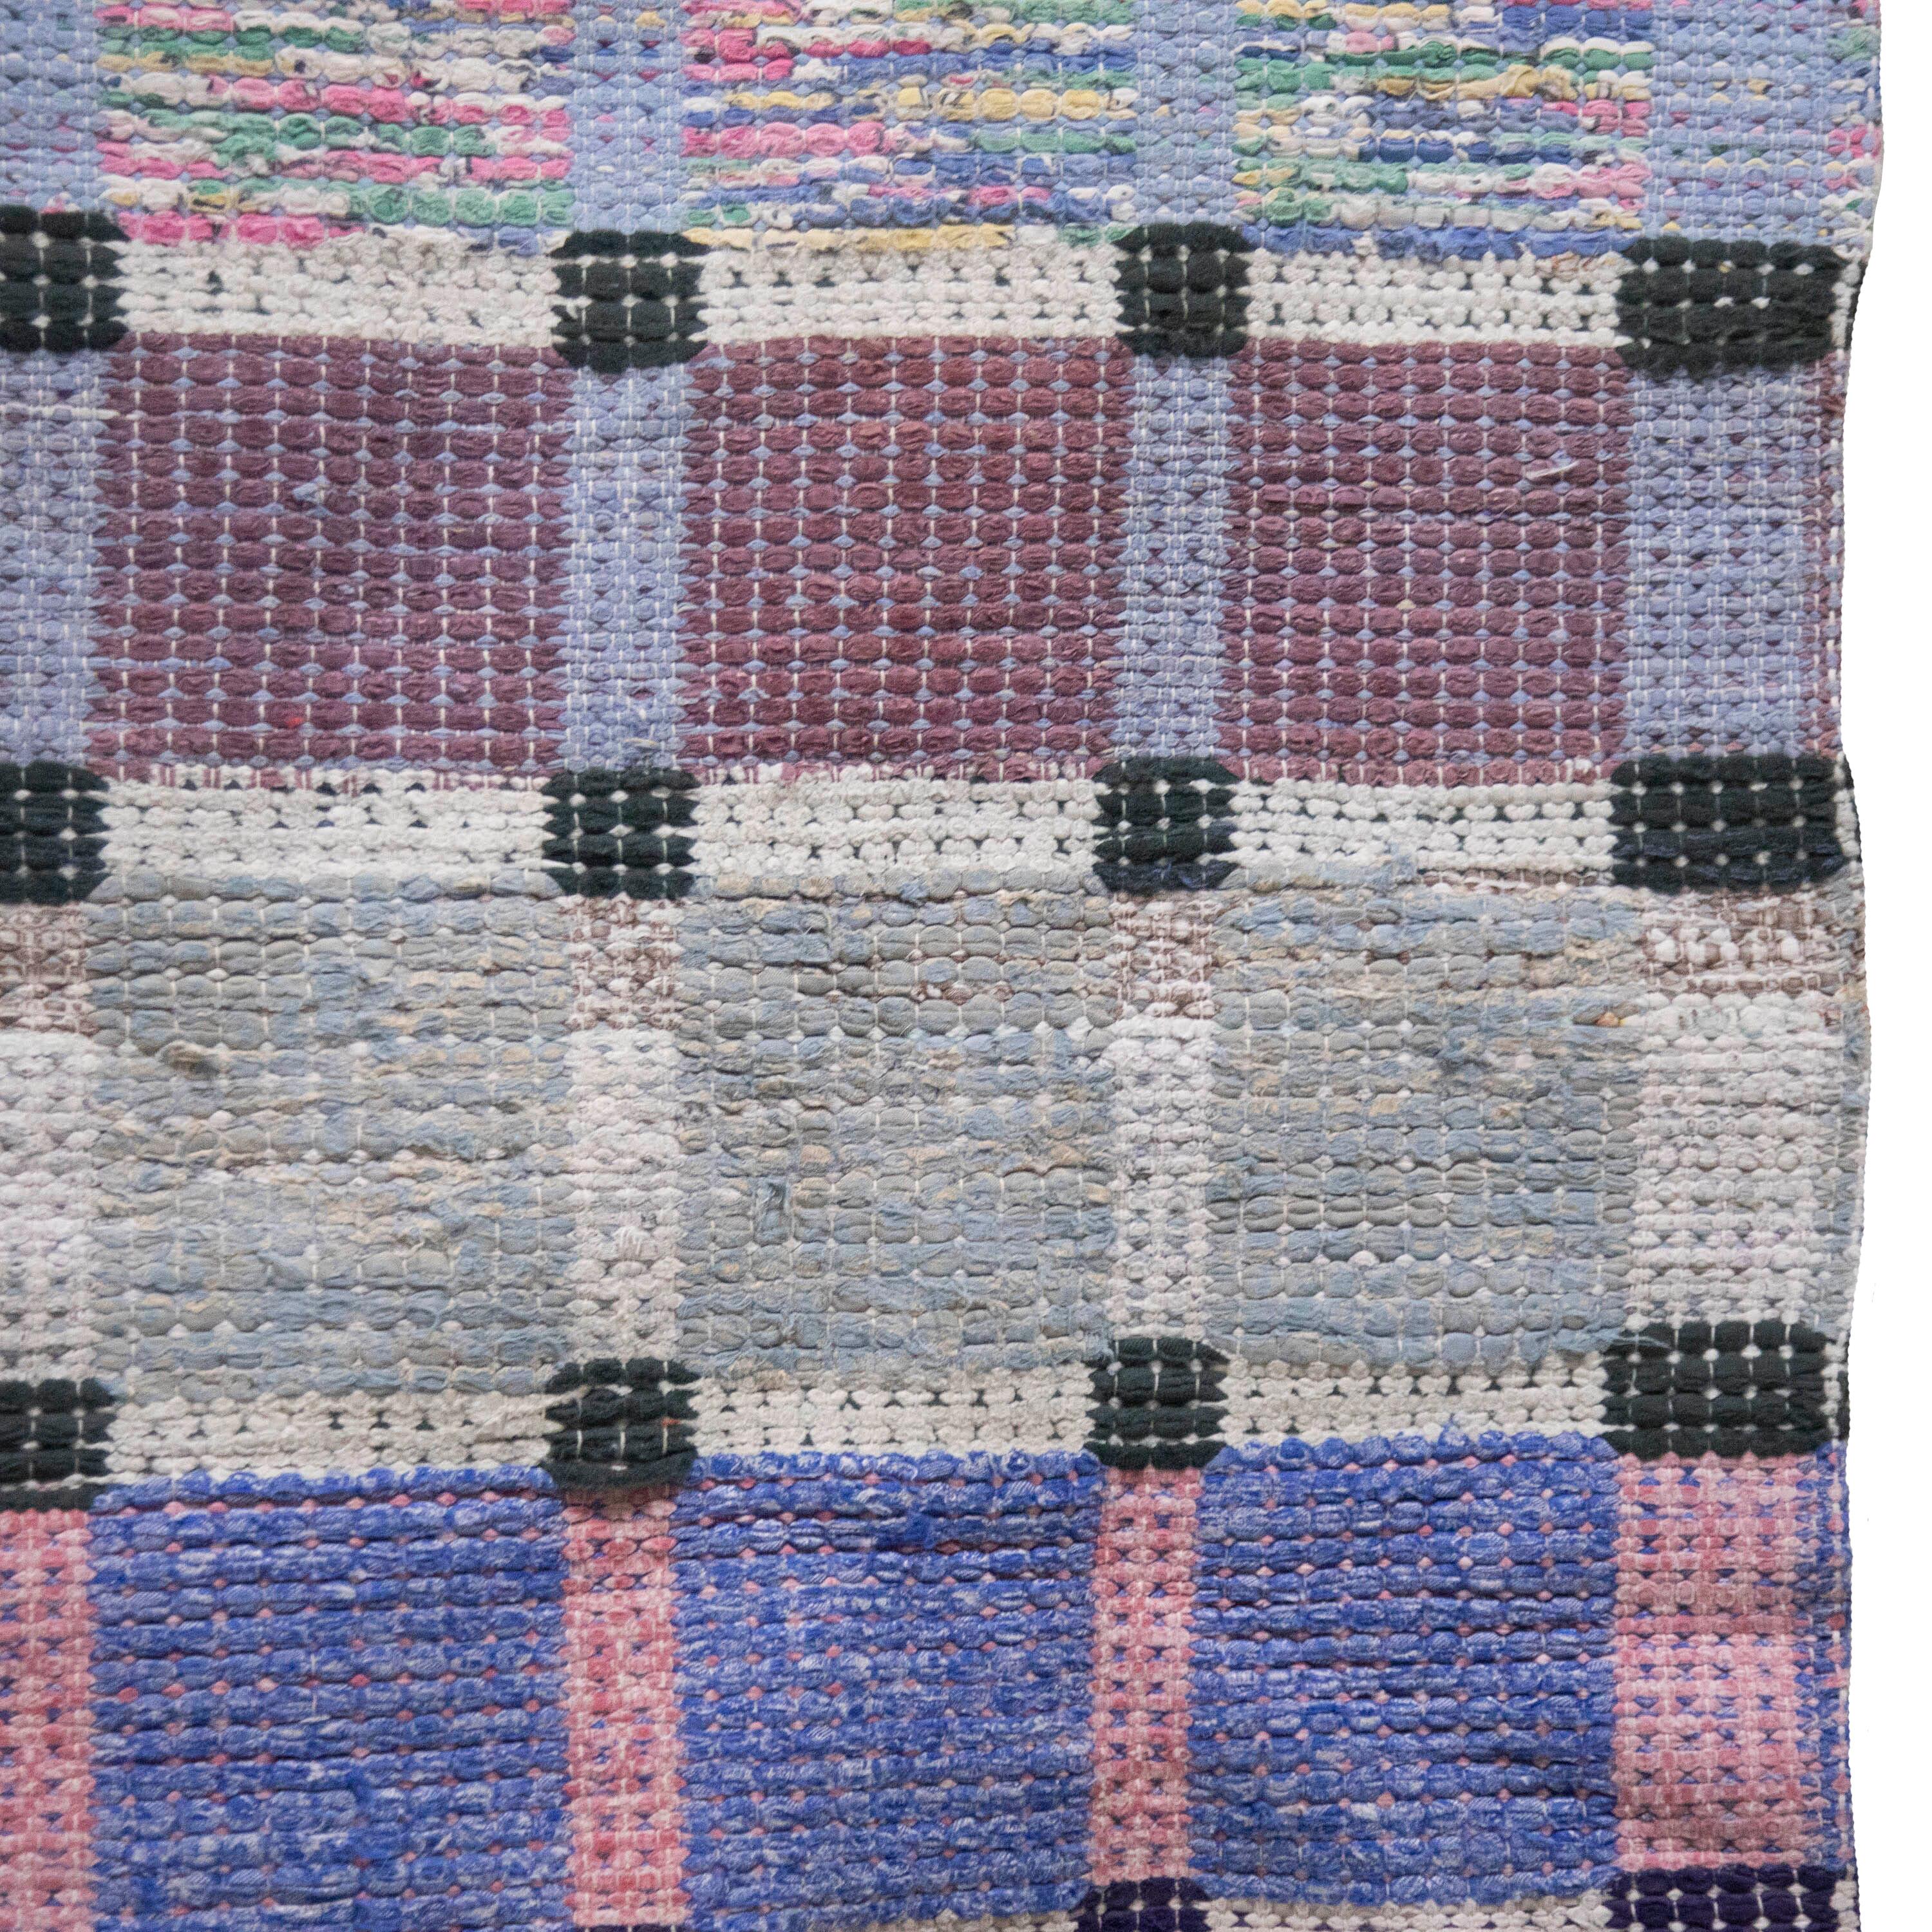 Tapis de chiffon suédois du 20e siècle.   Cet article présente un motif imprimé en blocs dans des tons de rose, de bleu et d'écru.   Ce tapis est lavable en machine à 30 degrés.
RT6024590